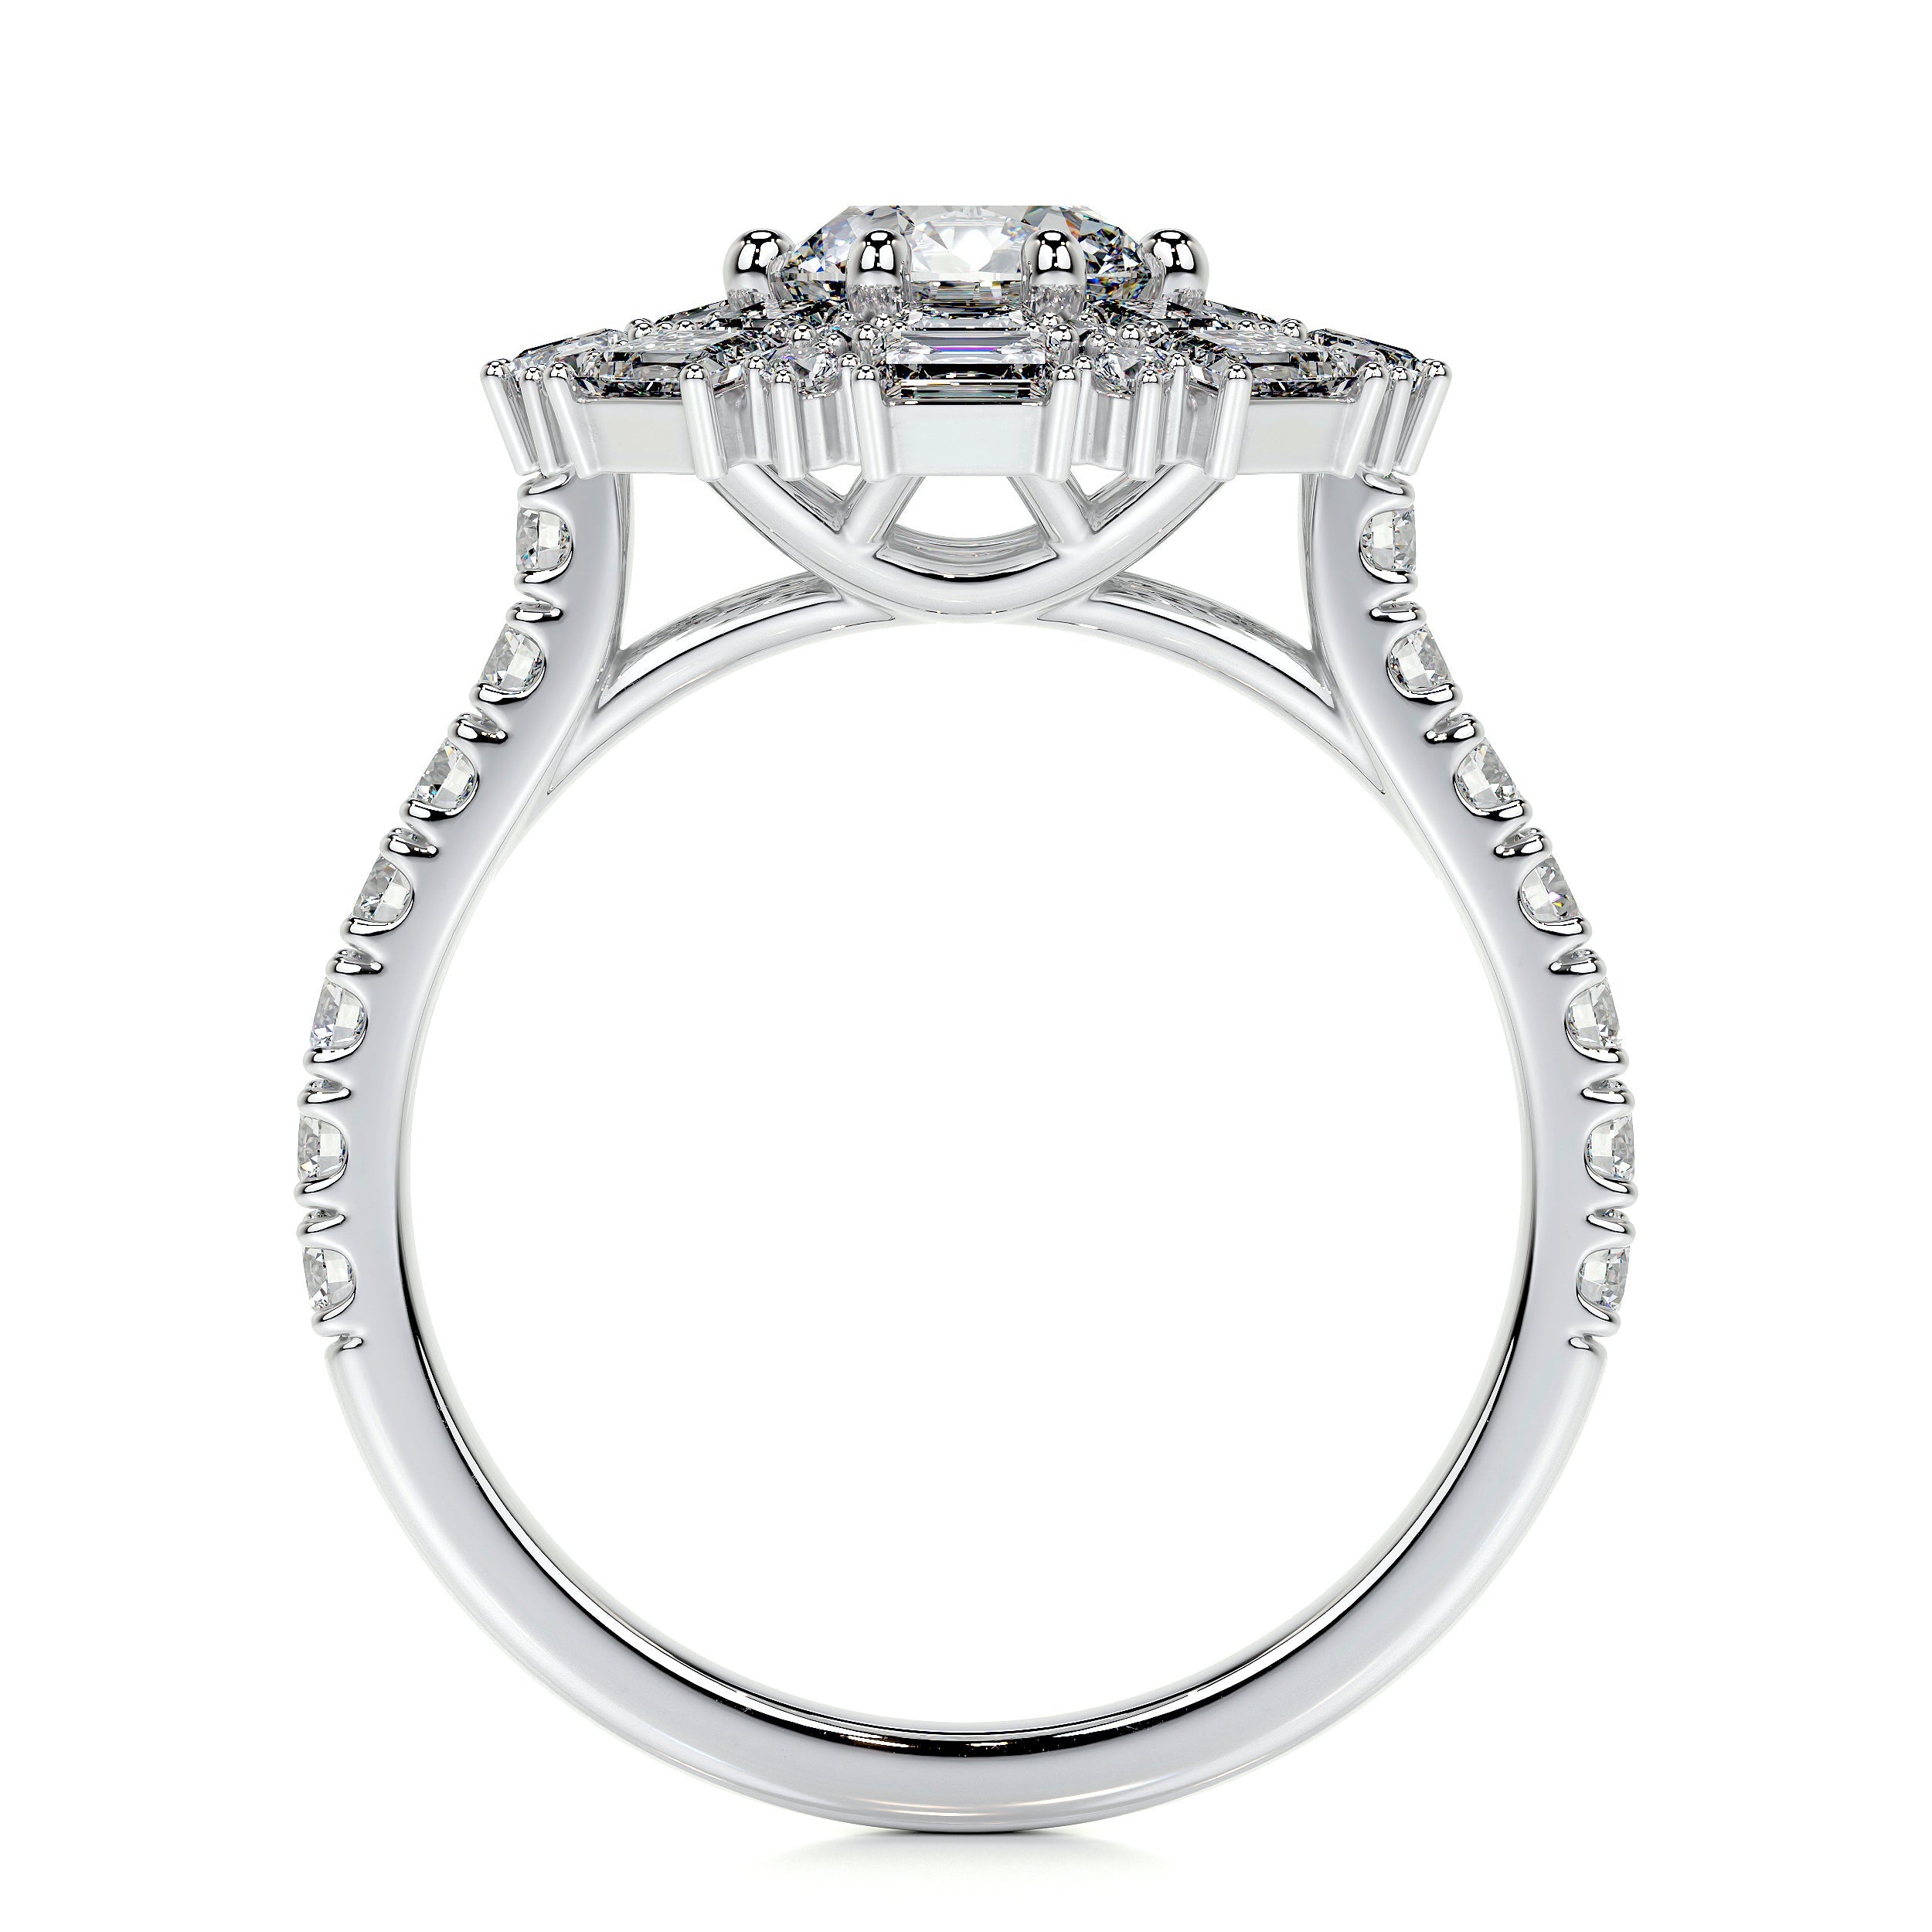 Snowflake Lab Grown Diamond Ring   (2.5 Carat) -14K White Gold